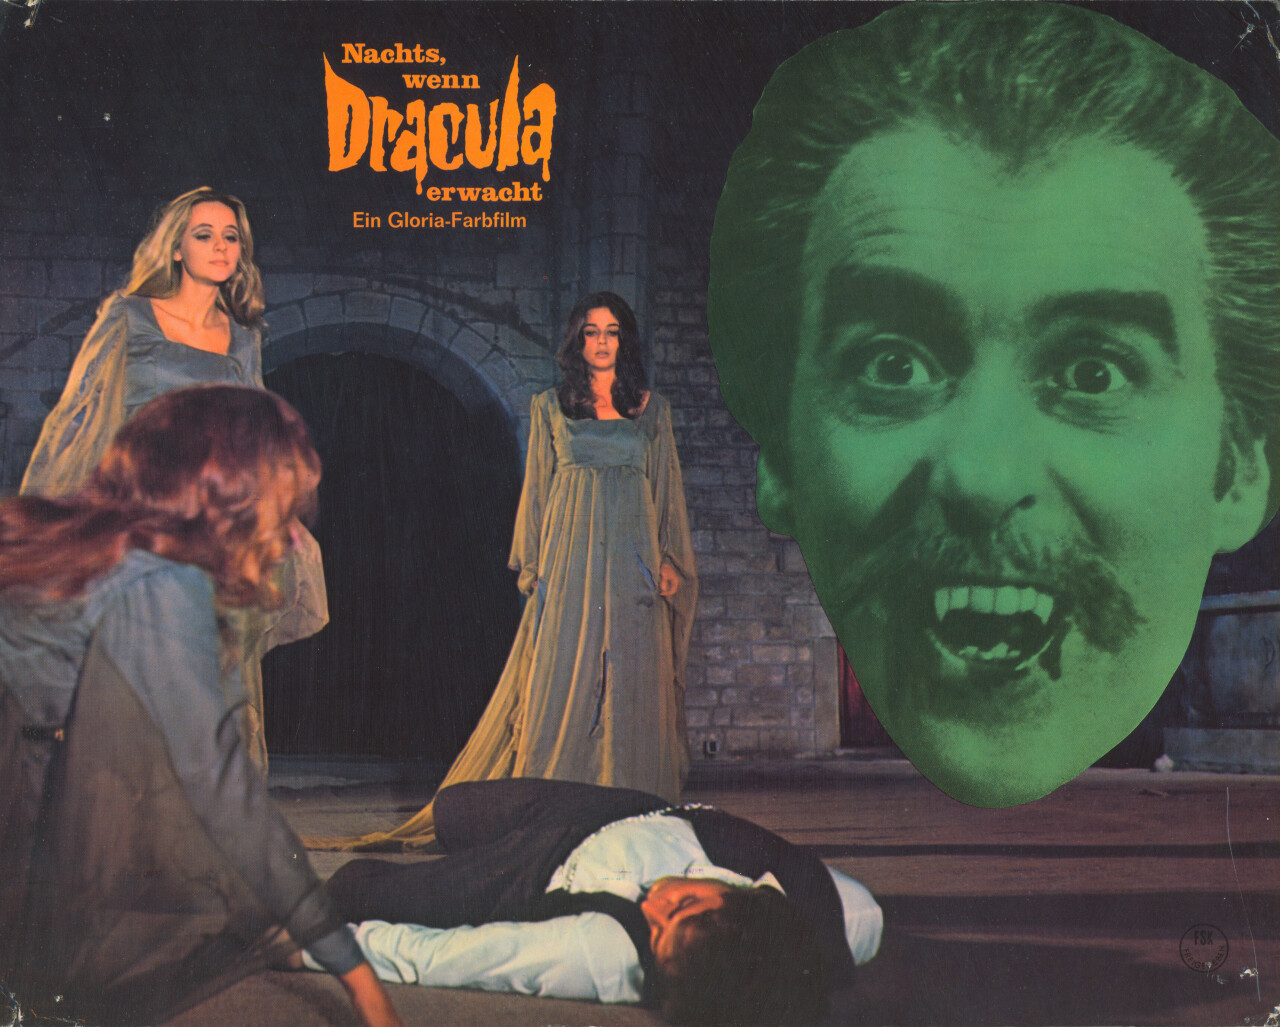 Граф Дракула (Count Dracula, 1970), режиссёр Хесус Франко, немецкий (ФРГ) постер к фильму (ужасы, 1970 год)